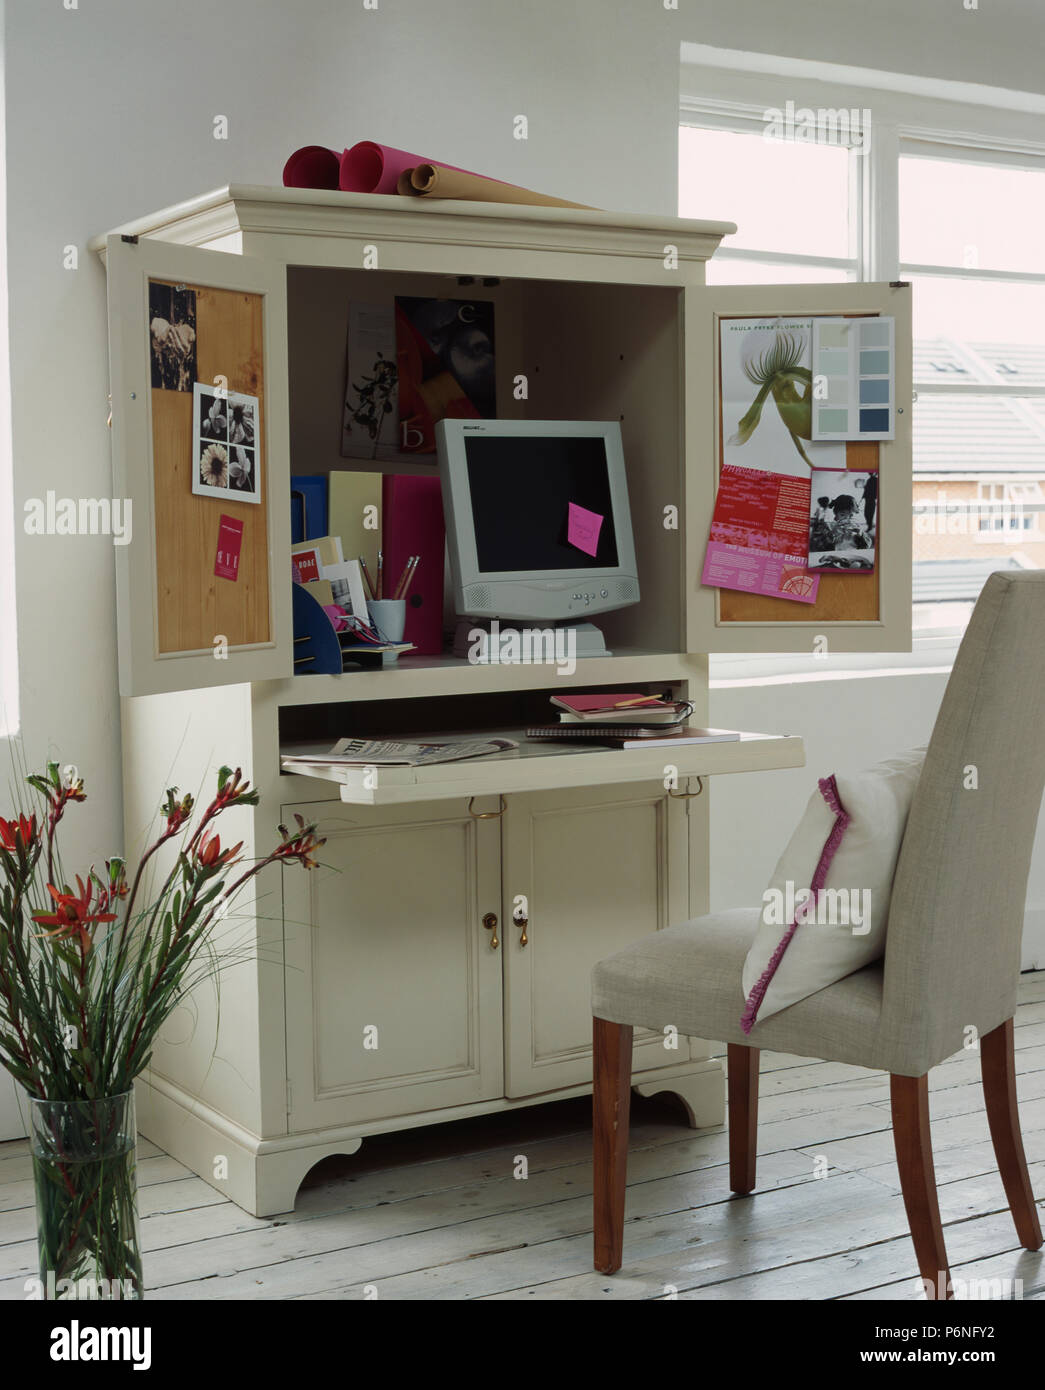 Nascondi il tuo account casa lontano in questo progettato in modo compatto home office Foto Stock